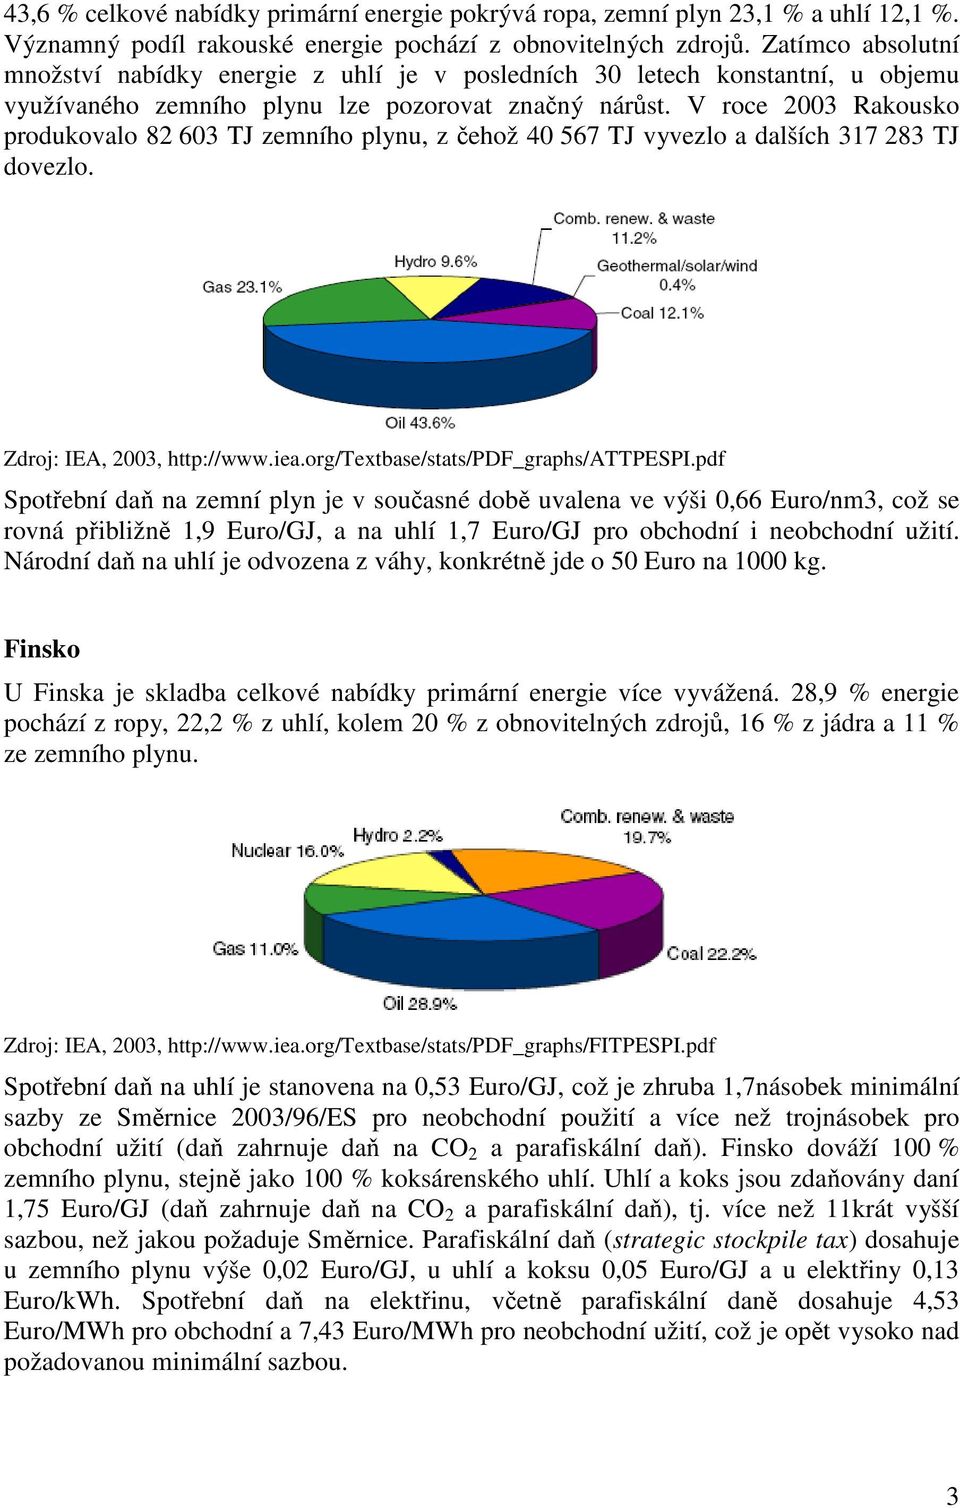 V roce 2003 Rakousko produkovalo 82 603 TJ zemního plynu, z čehož 40 567 TJ vyvezlo a dalších 317 283 TJ dovezlo. Zdroj: IEA, 2003, http://www.iea.org/textbase/stats/pdf_graphs/attpespi.